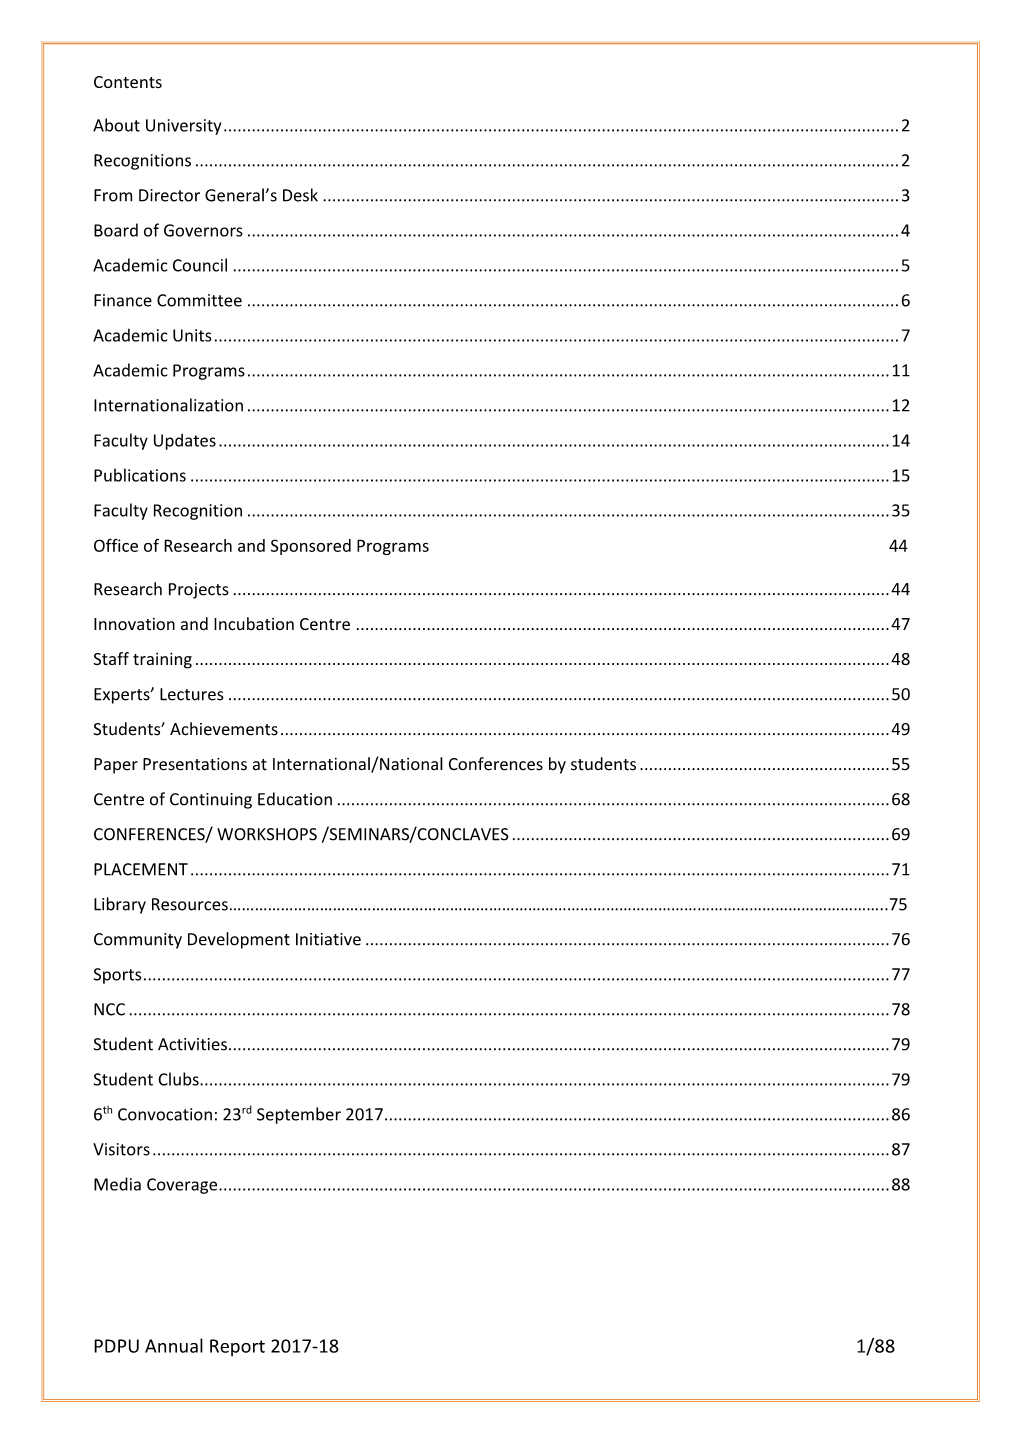 PDPU Annual Report 2017-18 1/88